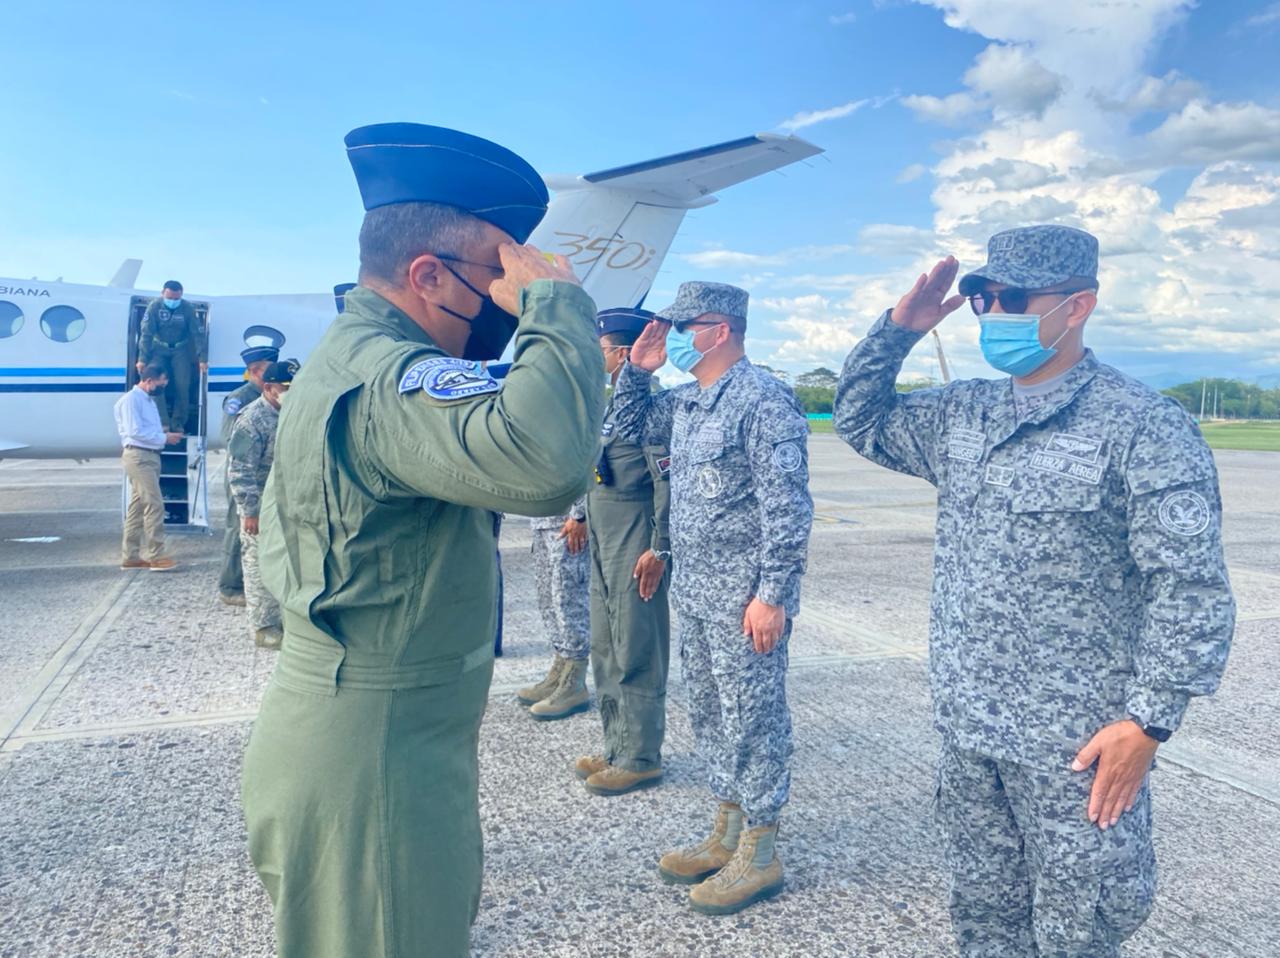 El Jefe de Servicio Nacional Aeronaval de Panamá, realiza visita geoestratégica al Comando Aéreo de Combate No.1